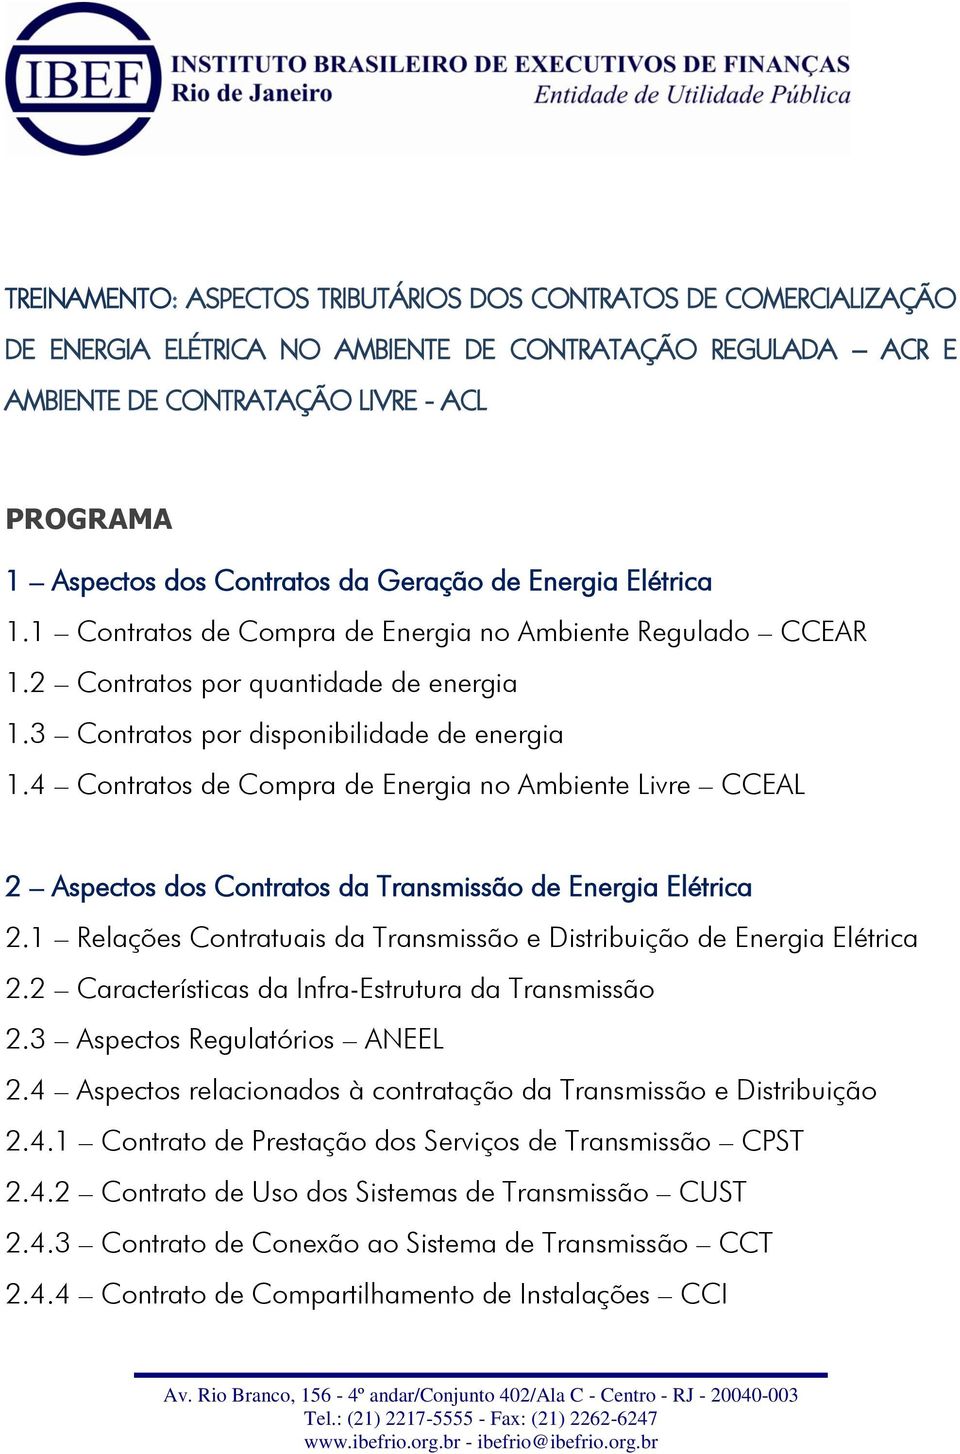 4 Contratos de Compra de Energia no Ambiente Livre CCEAL 2 Aspectos dos Contratos da Transmissão de Energia Elétrica 2.1 Relações Contratuais da Transmissão e Distribuição de Energia Elétrica 2.